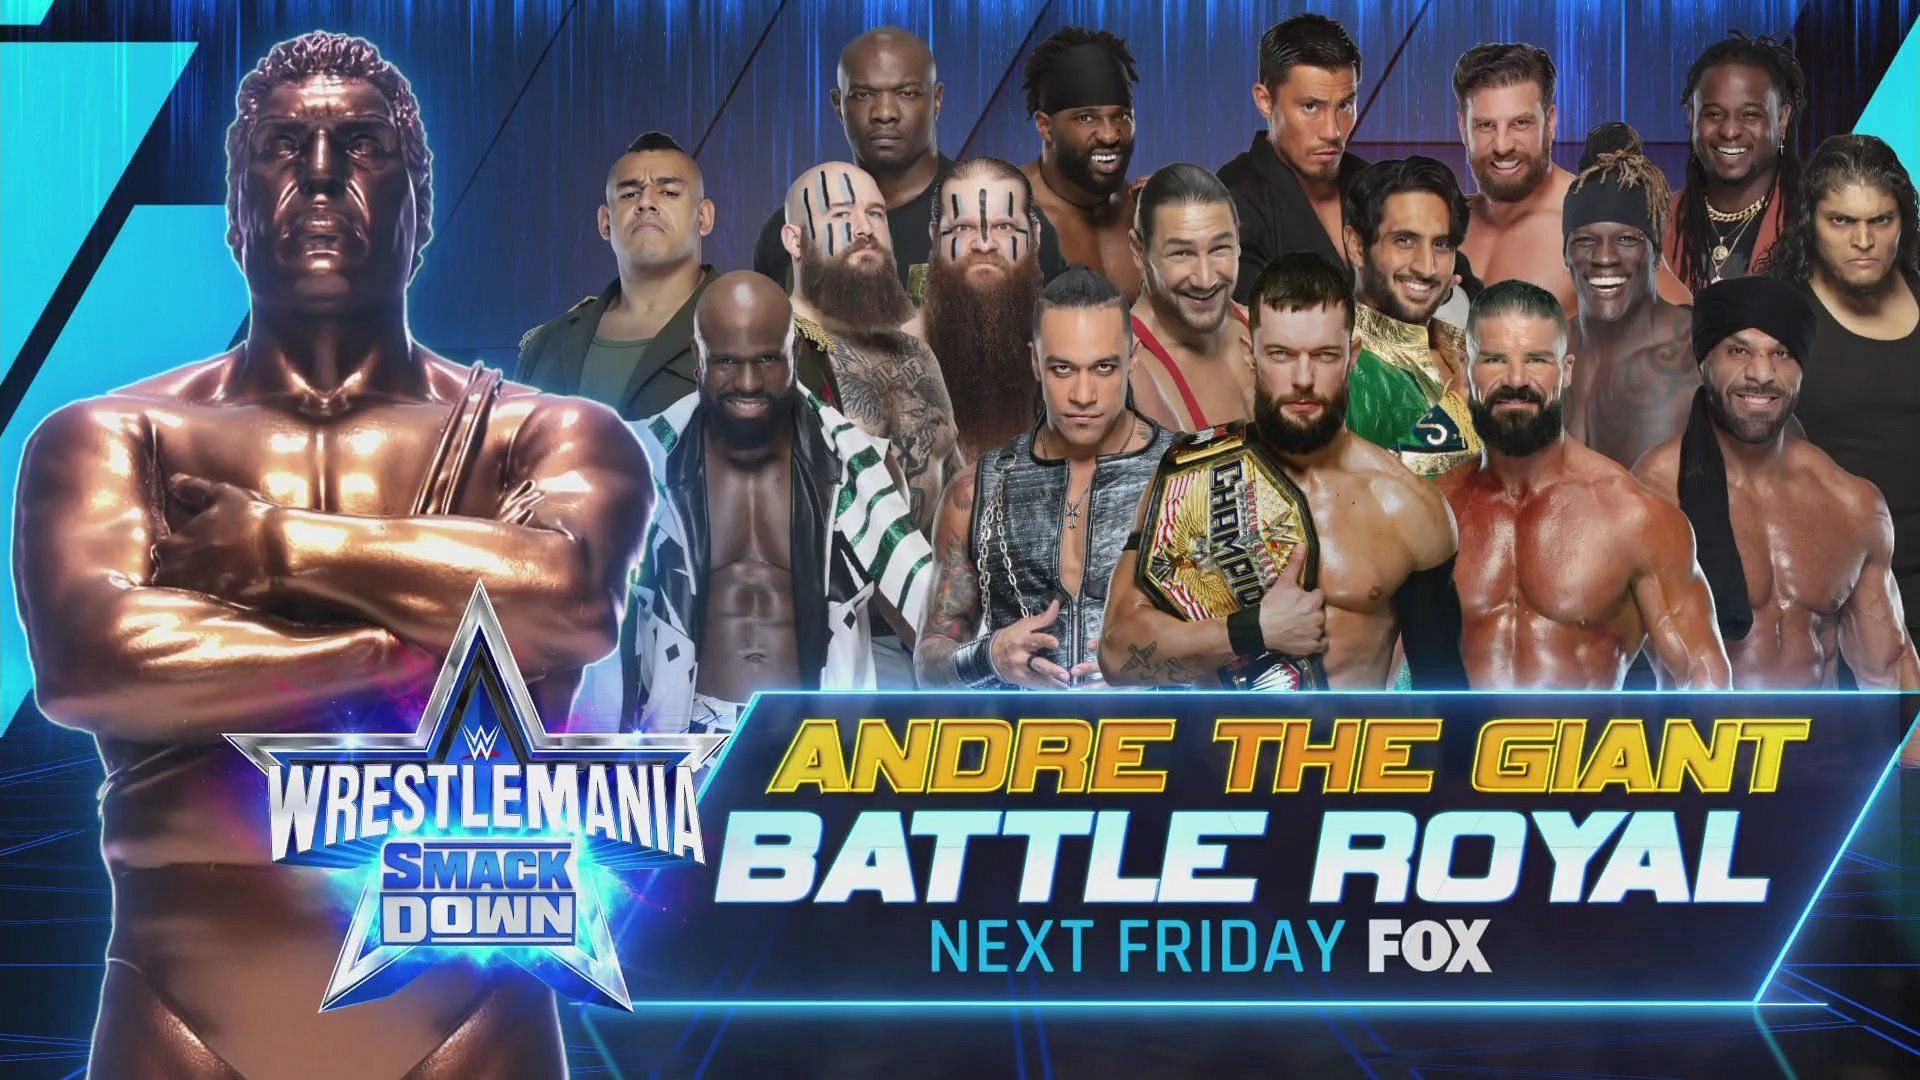 WWE SmackDown में अगले हफ्ते आंद्रे द जायंट मेमोरियल बैटल रॉयल मैच का आयोजन किया जाएगा